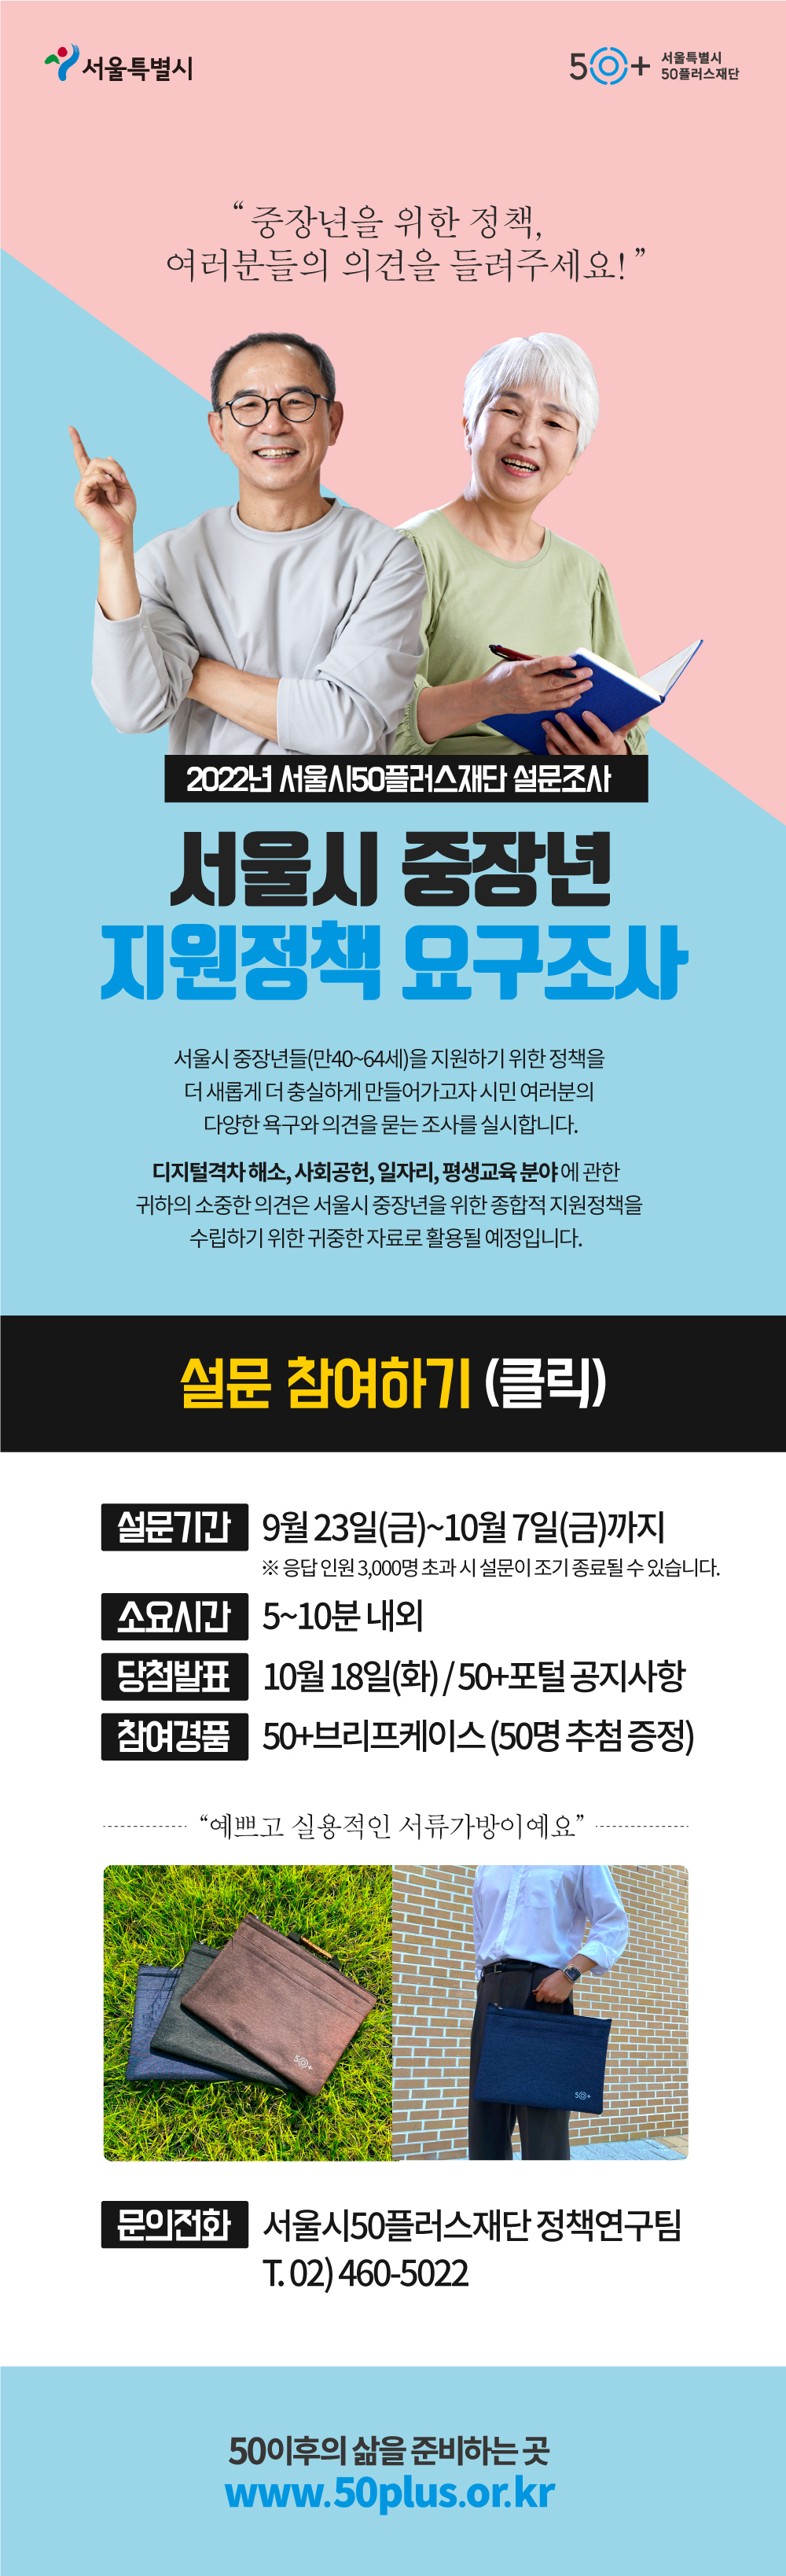 (2022.09.23)+정책연구팀_2022년+중장년+지원정책+요구조사.jpg